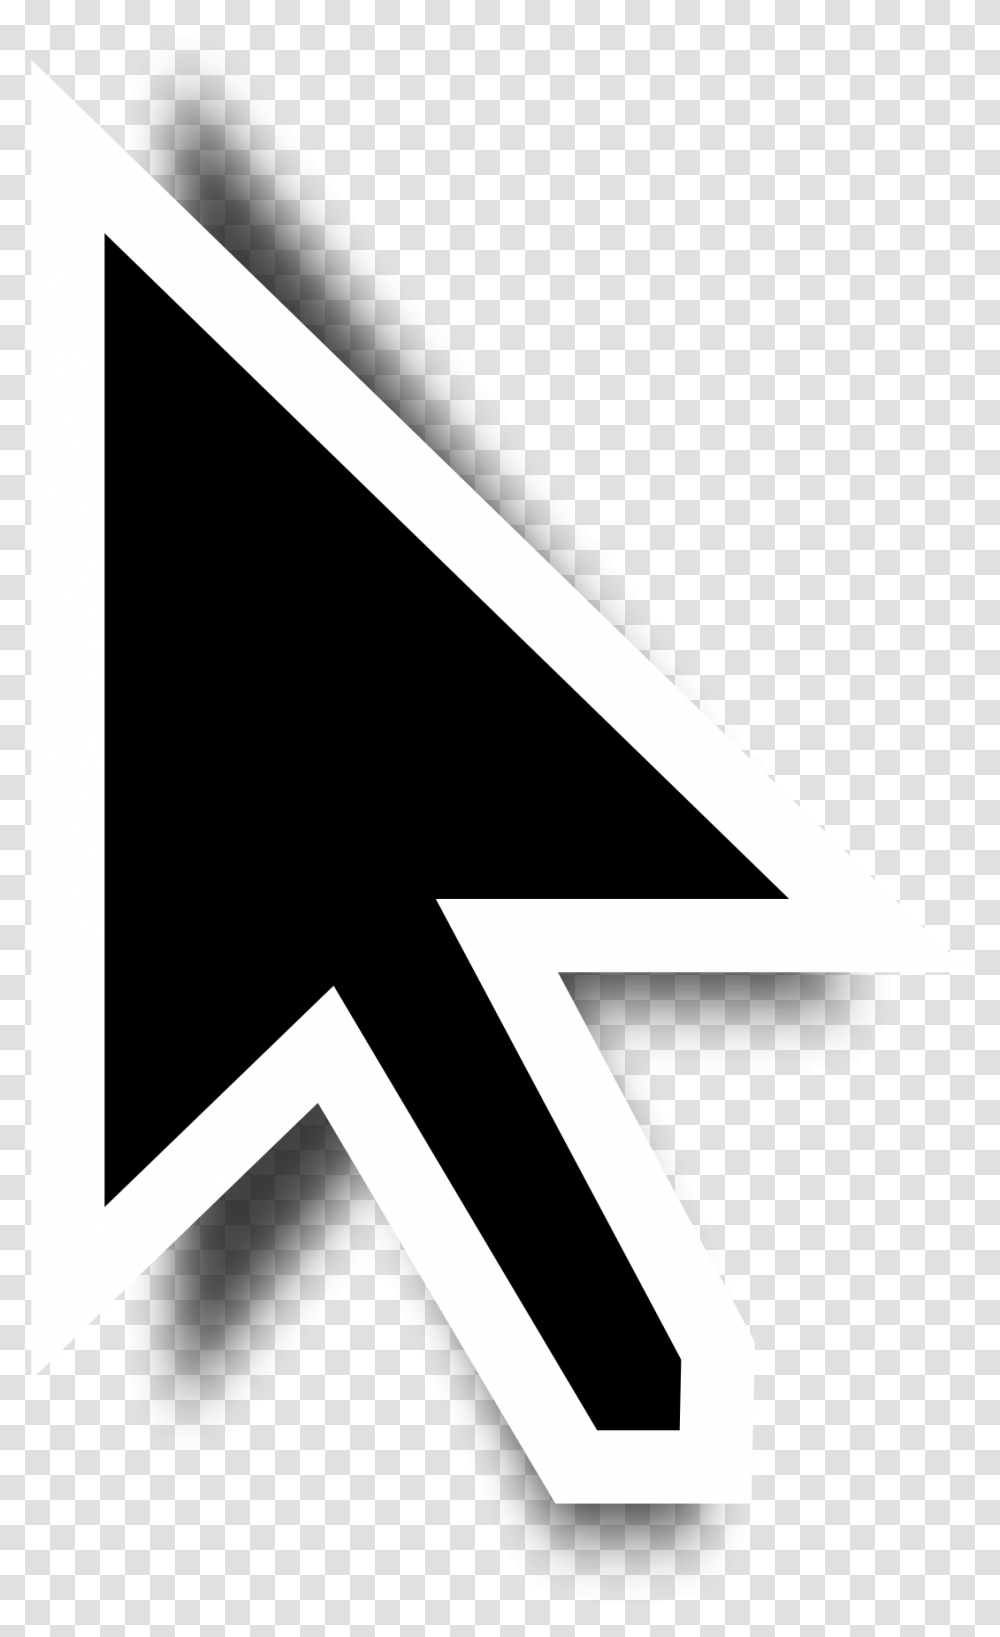 Black Cursor 1 Image Mouse Cursor, Triangle, Symbol, Cross, Alphabet Transparent Png